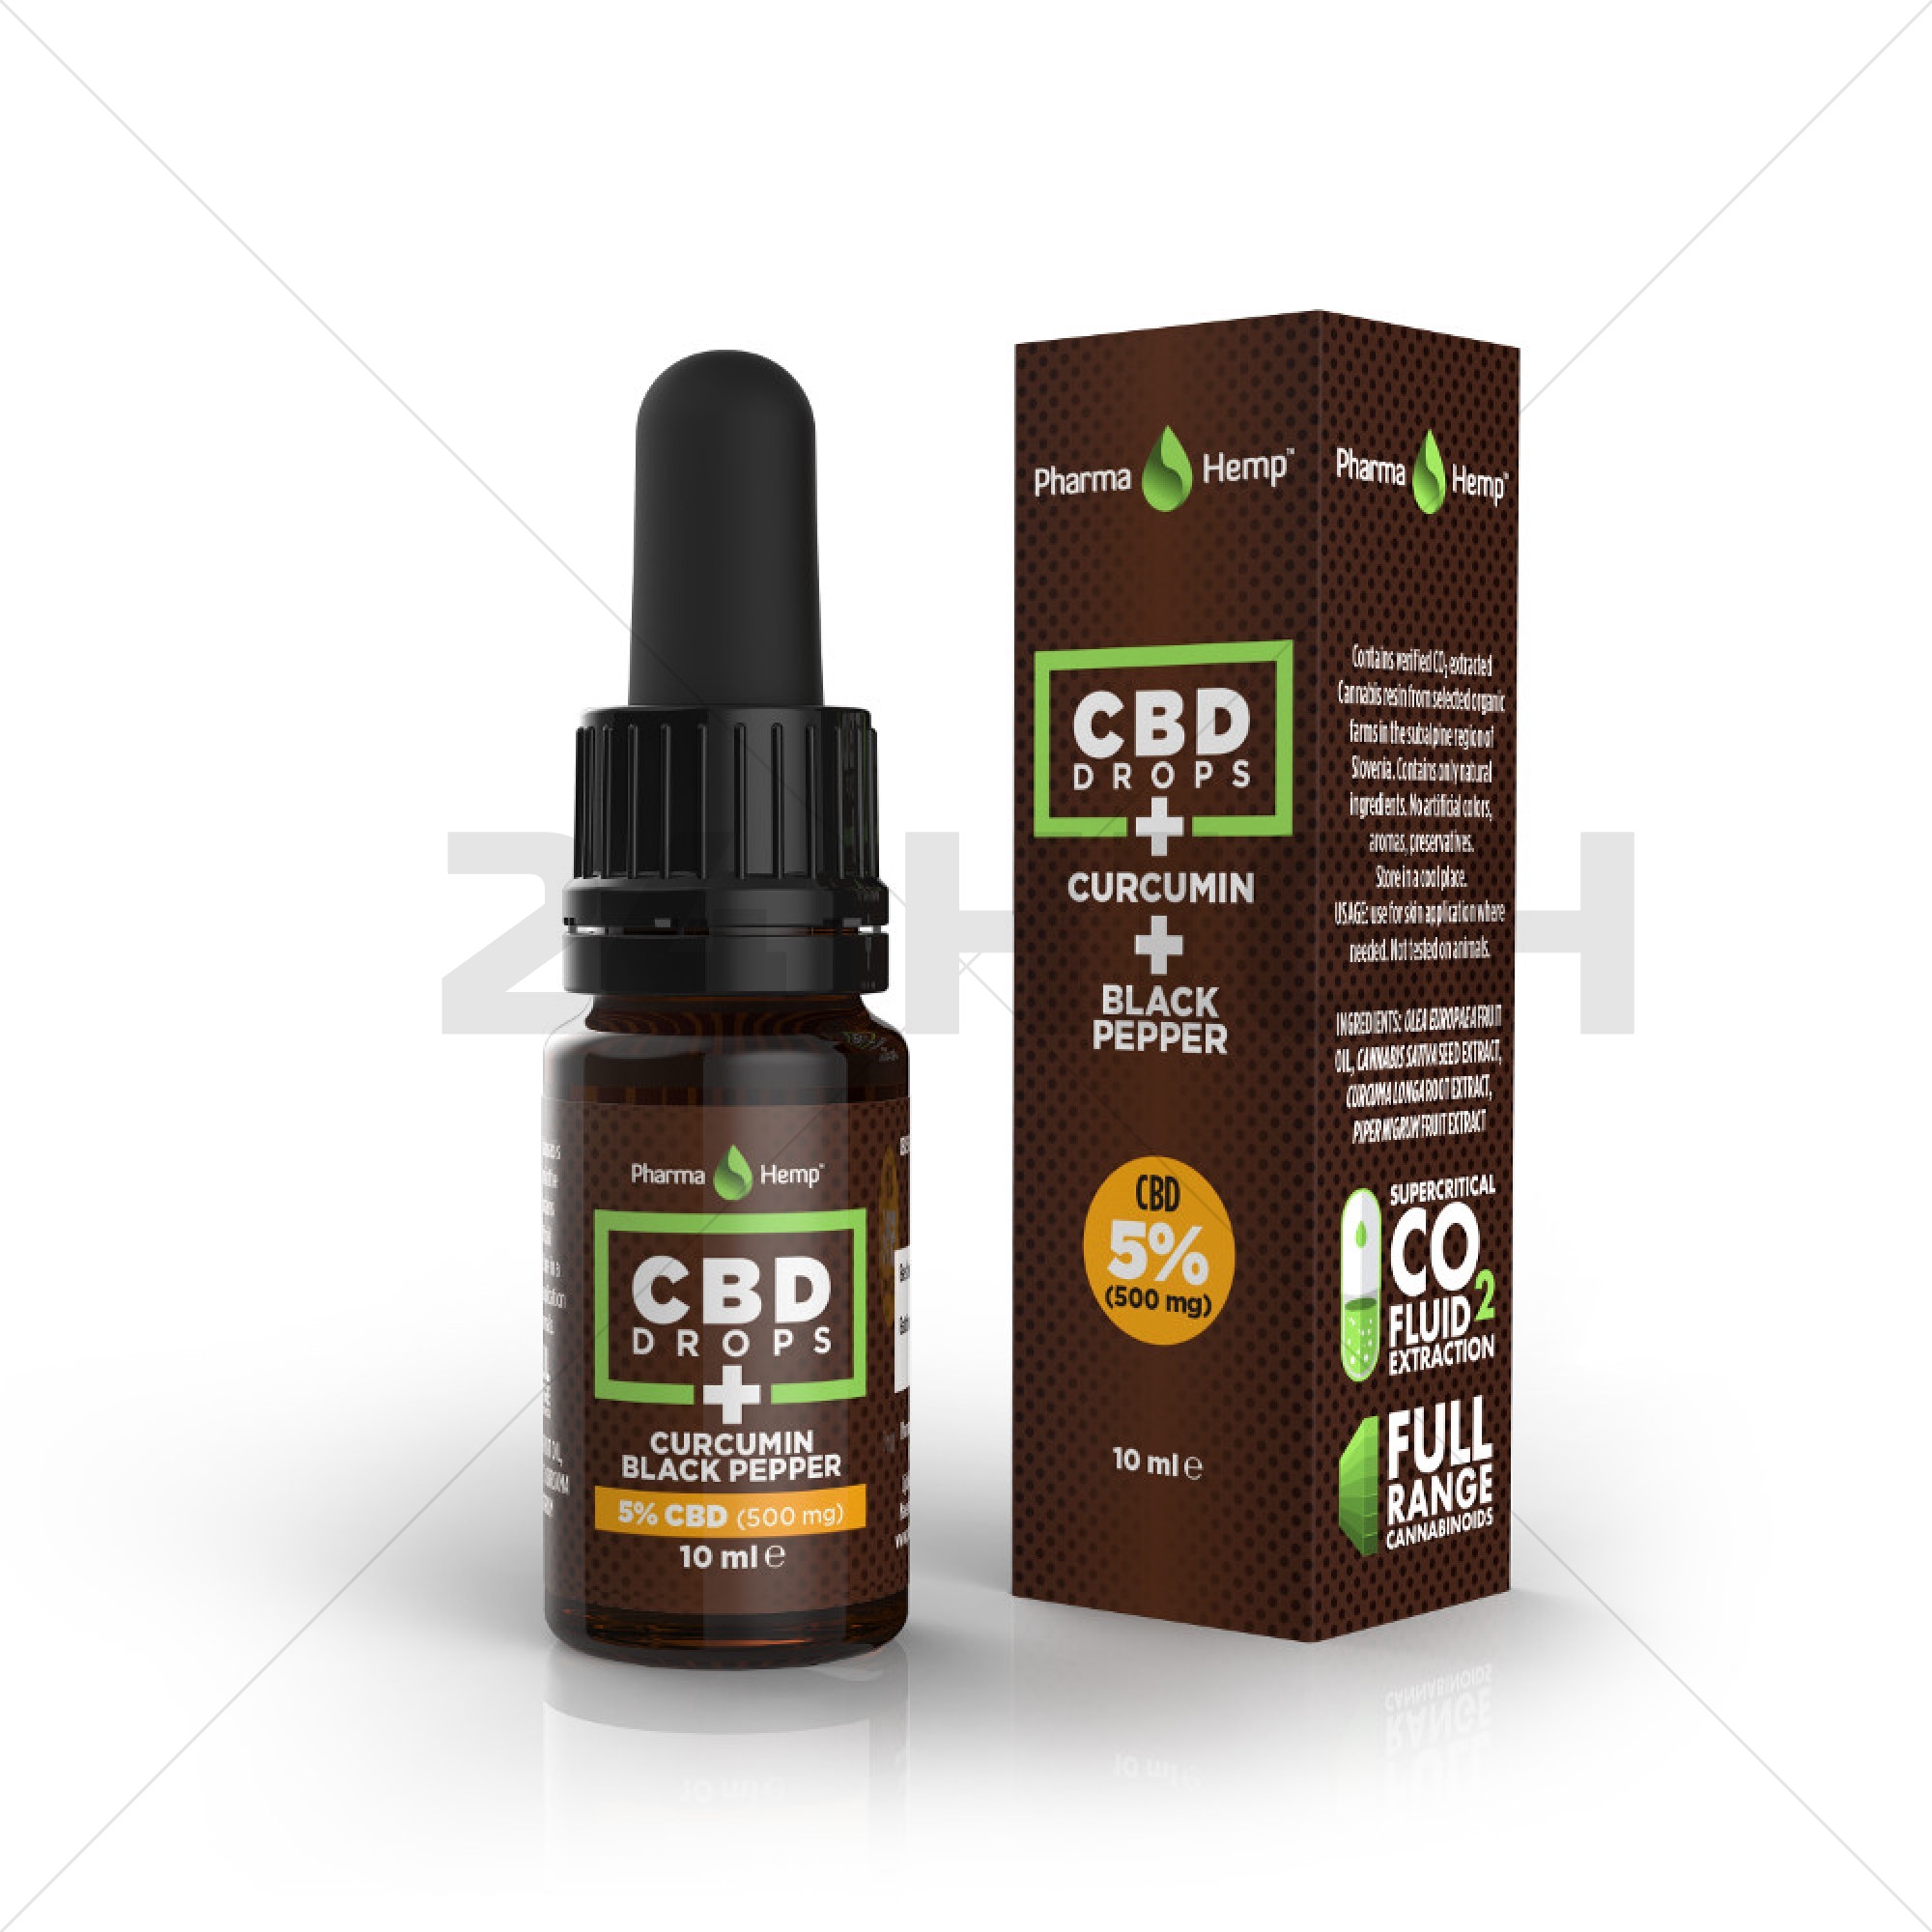 PharmaHemp huile de CBD avec Curcuma - 5% CBD